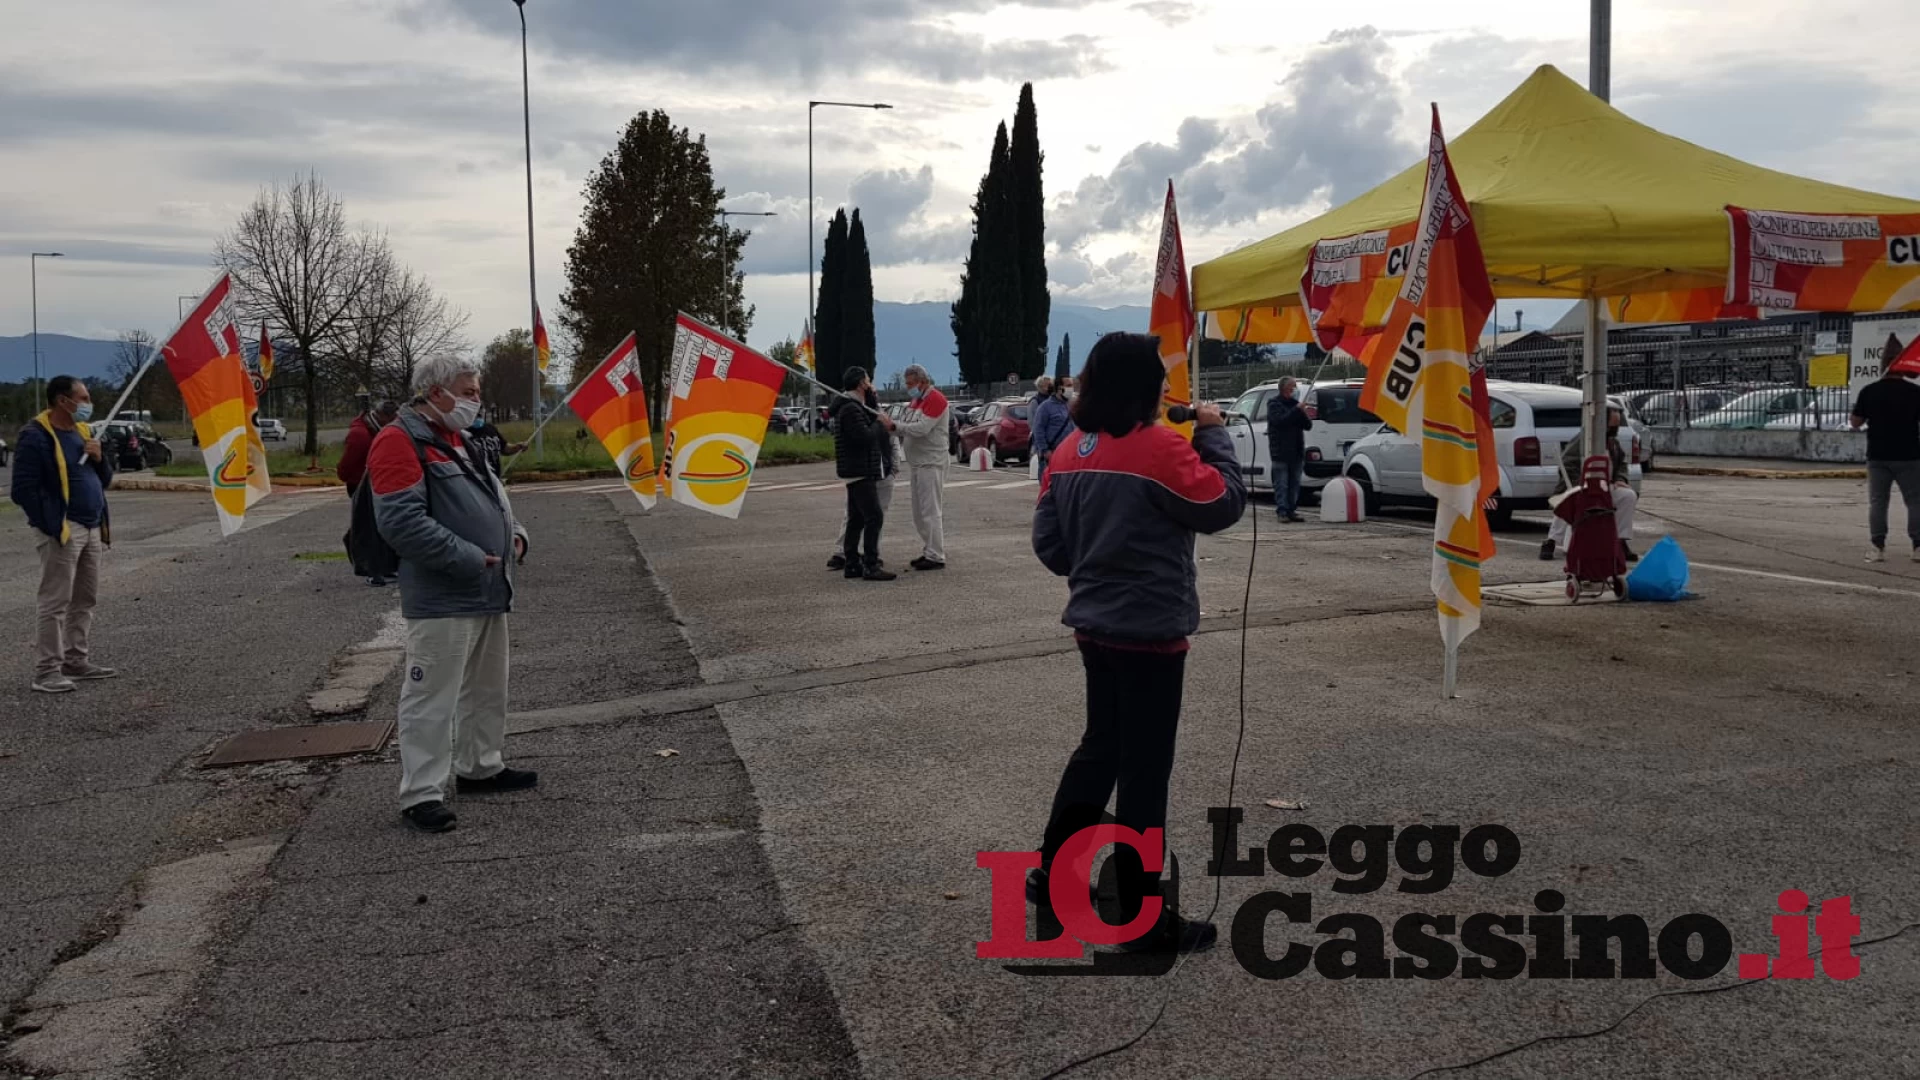 Fca, rinnovo del contratto: operai in assemblea a Cassino e alla Sevel